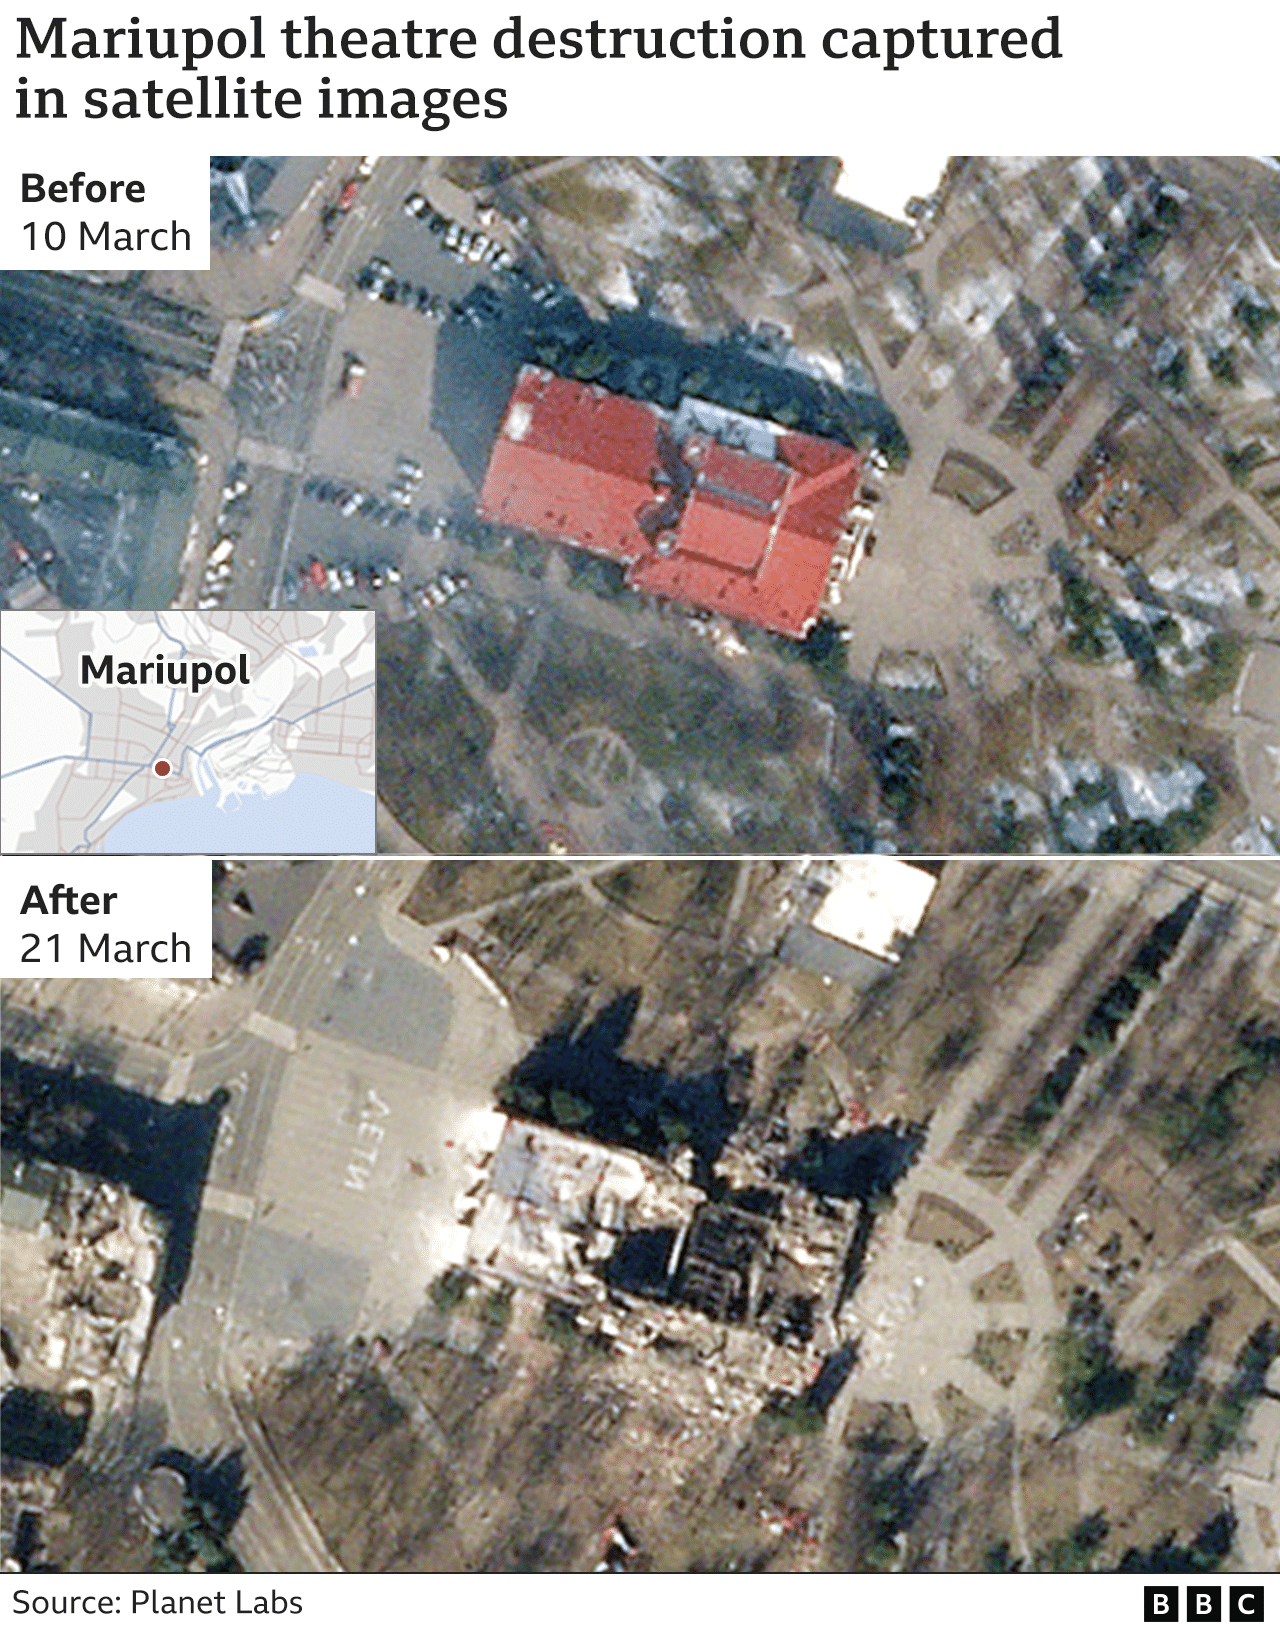 Graphic: Mariupol theatre destruction captured in satellite images